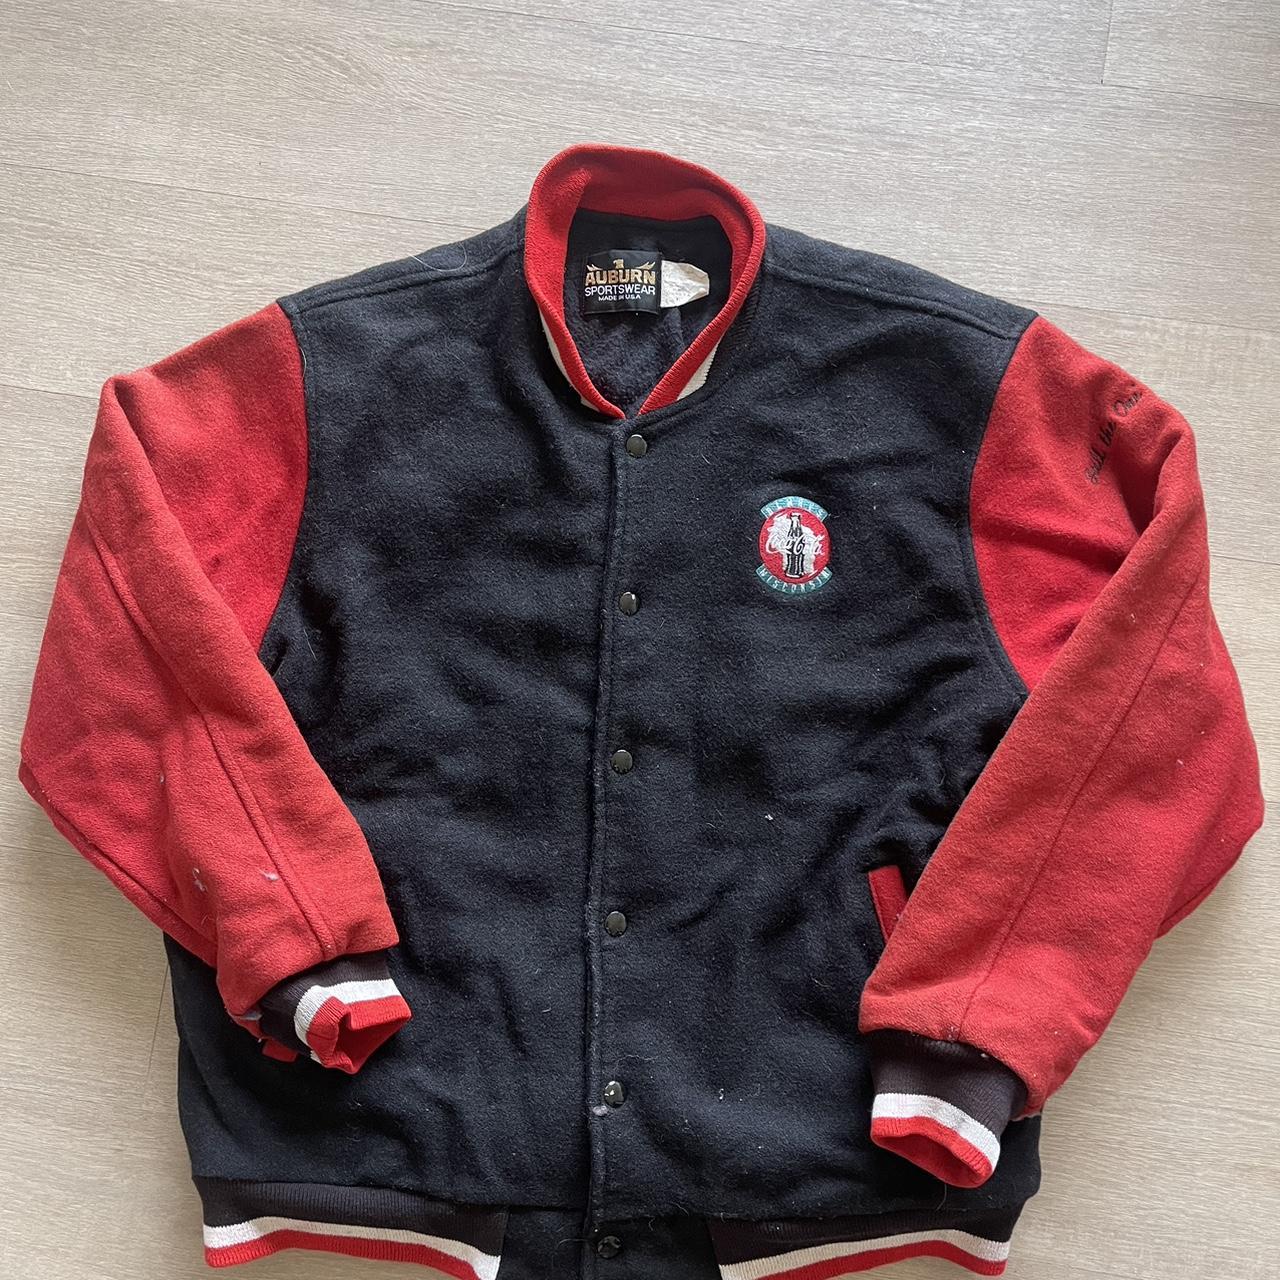 Vintage 90s Coca Cola letterman wool jacket. Made in... - Depop